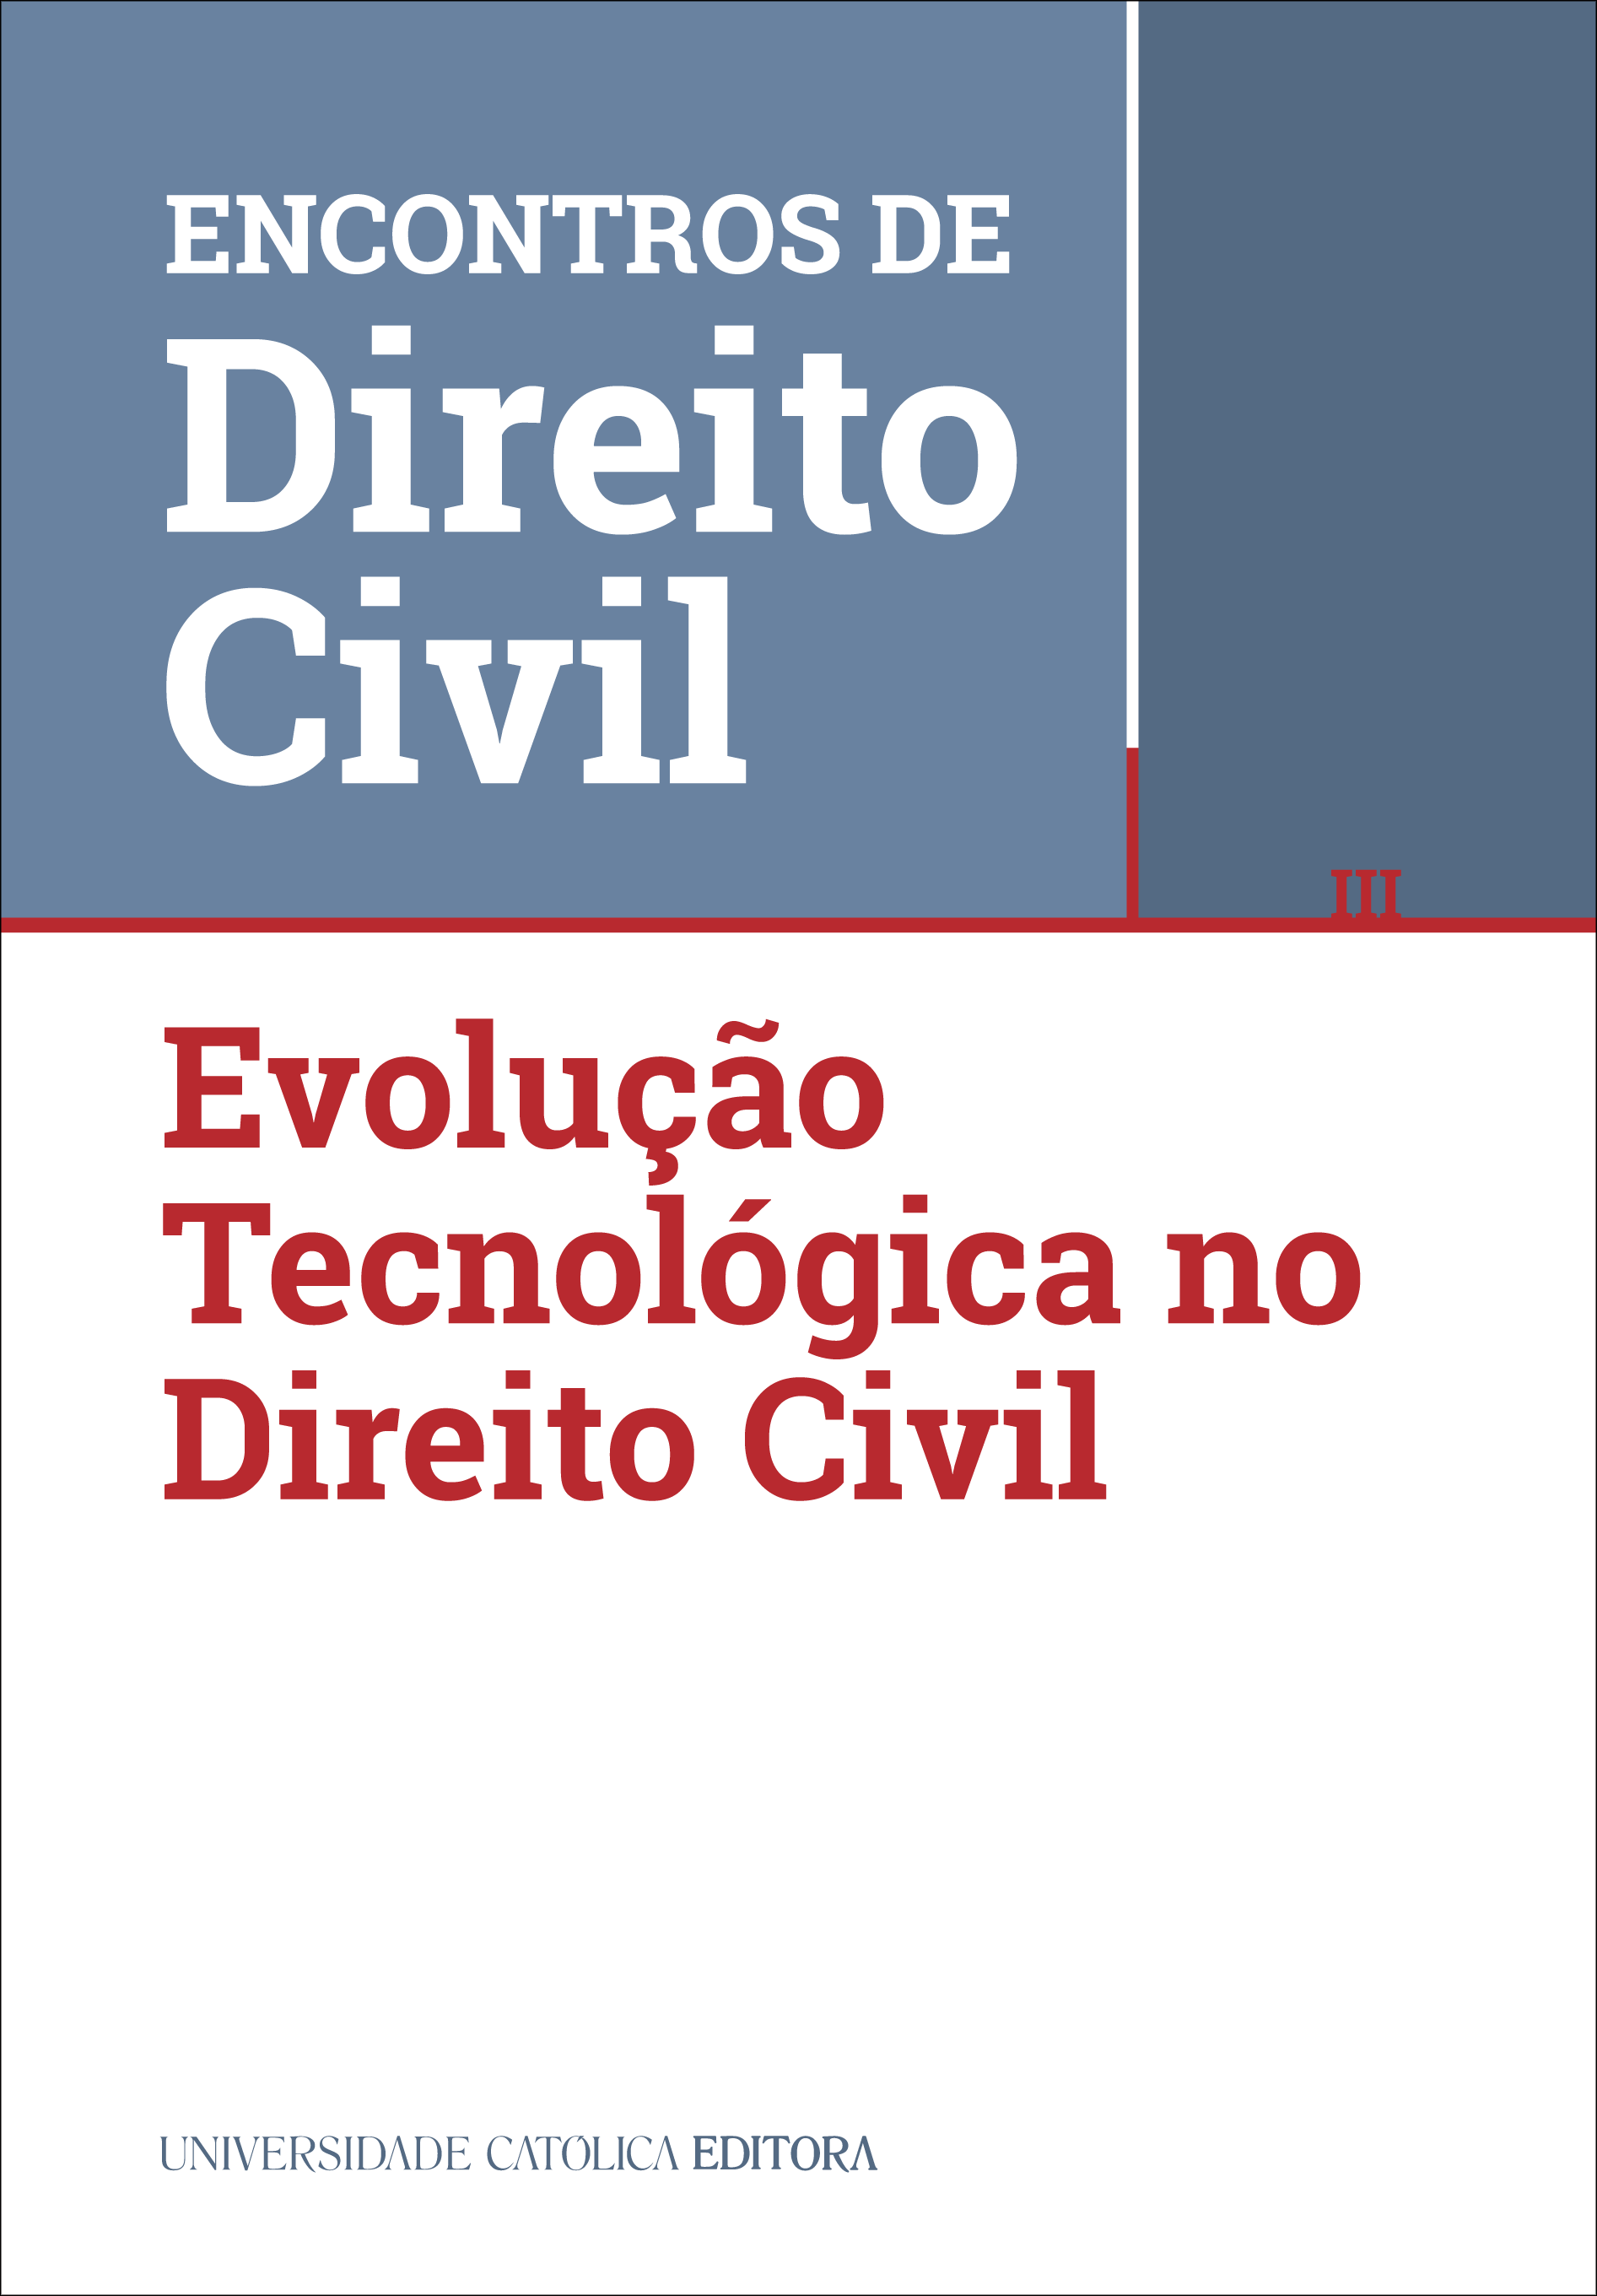 III ENCONTROS DE DIREITO CIVIL - Evolução Tecnológica no Direito Civil